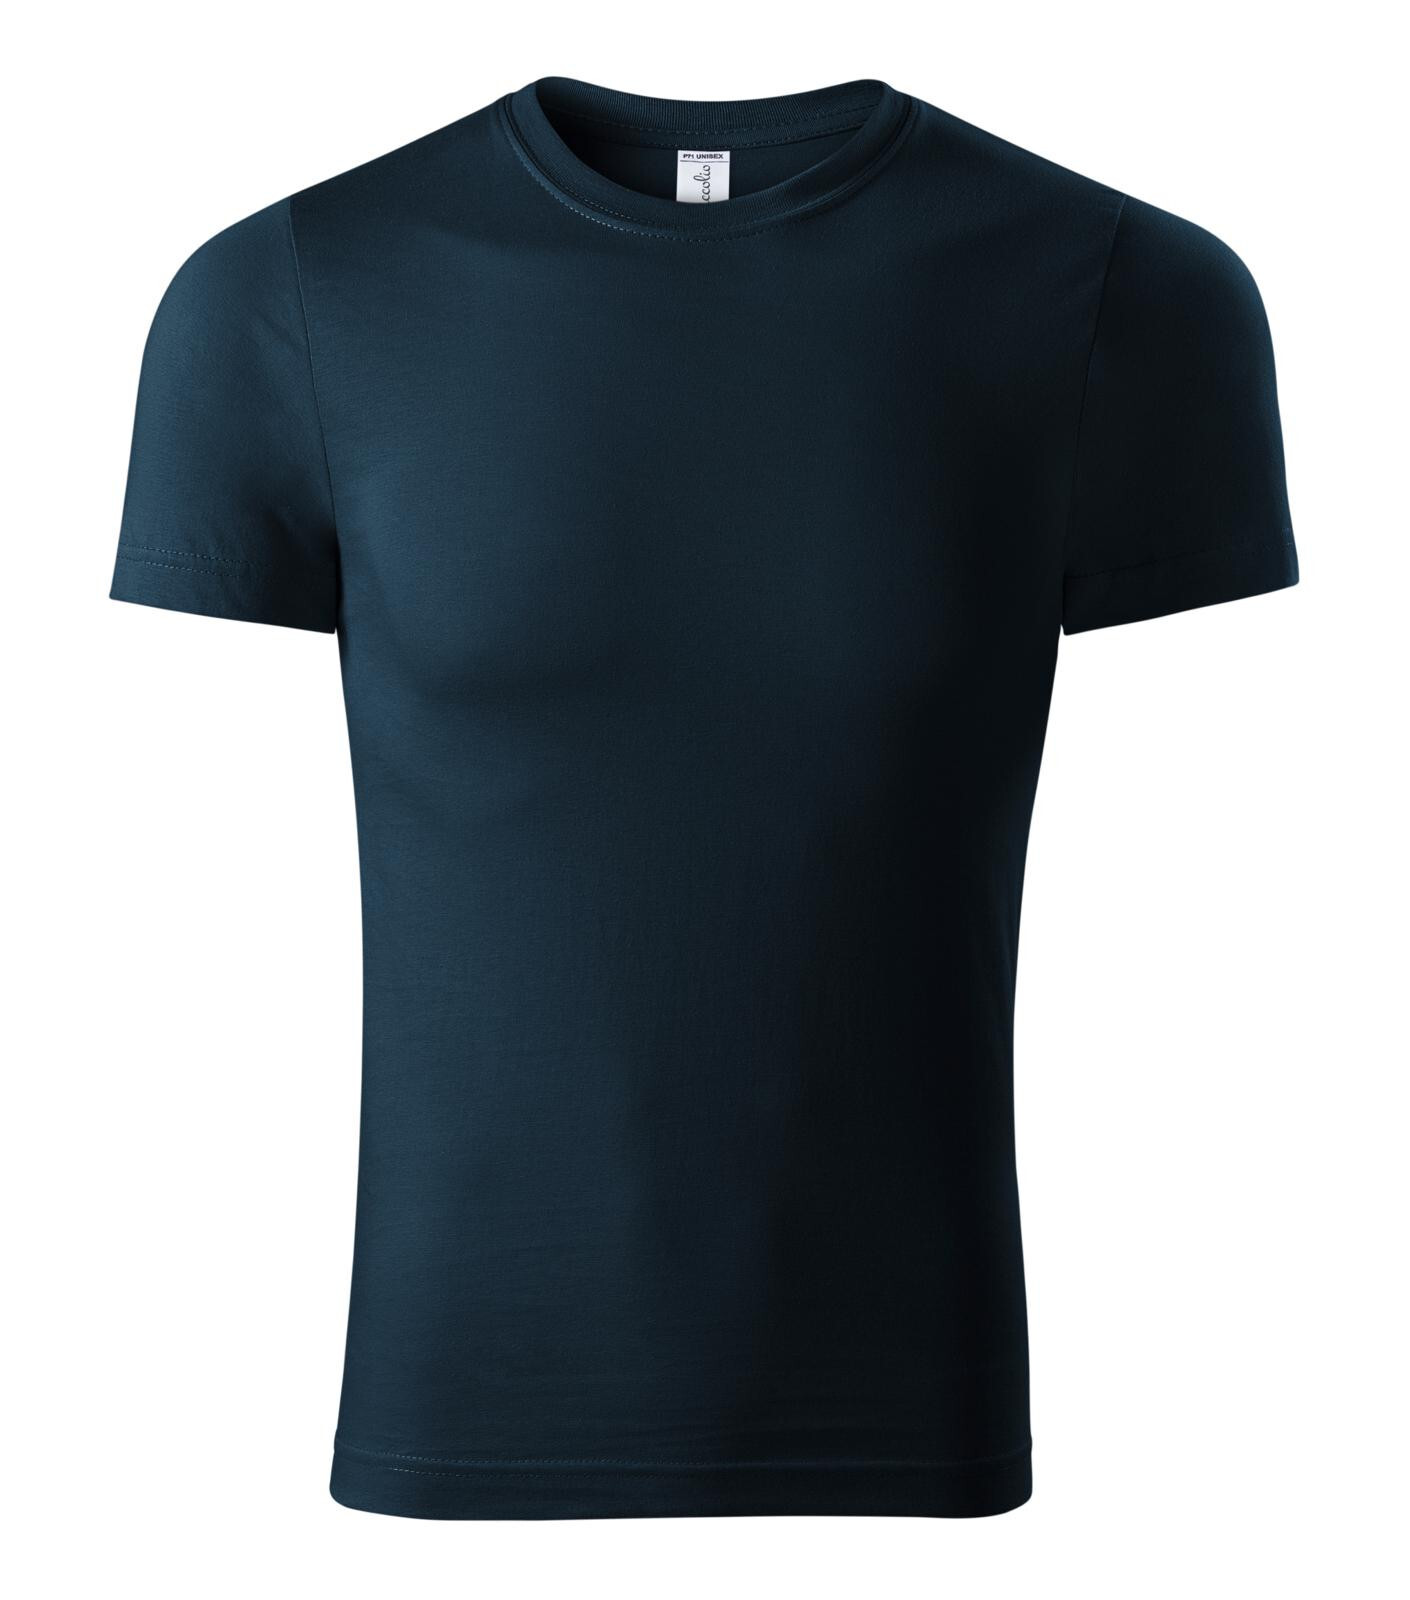 Unisex bavlnené tričko Piccolio Parade P71 - veľkosť: XL, farba: tmavo modrá